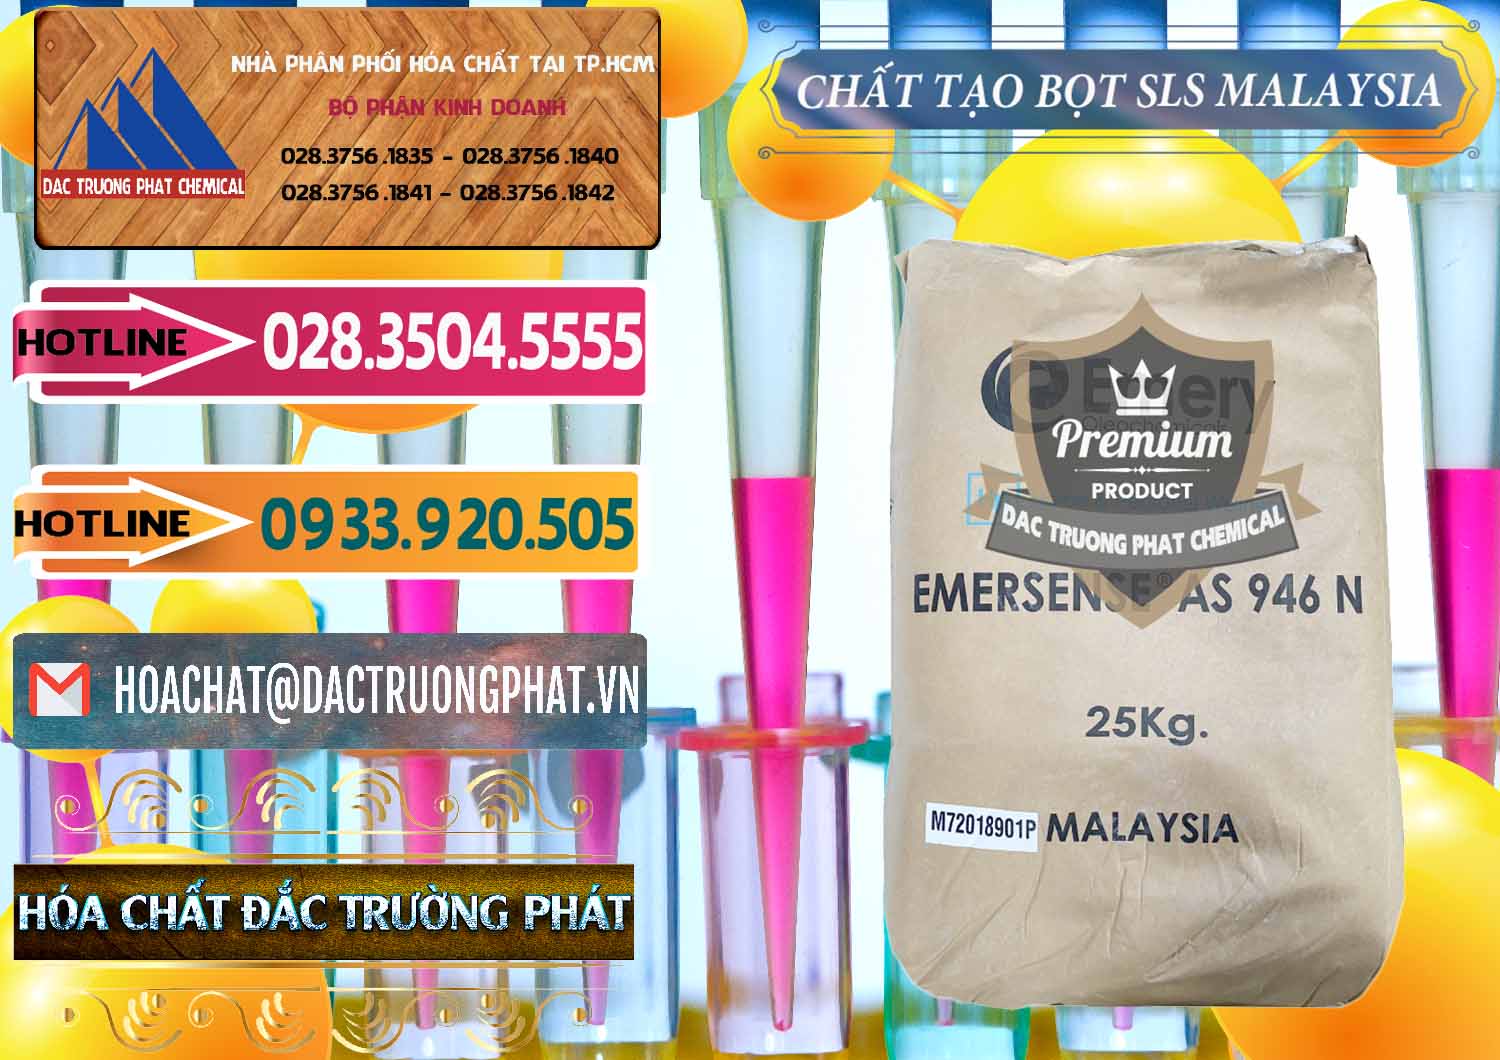 Nơi kinh doanh và bán Chất Tạo Bọt SLS Emery - Emersense AS 946N Mã Lai Malaysia - 0423 - Cty phân phối ( bán ) hóa chất tại TP.HCM - dactruongphat.vn